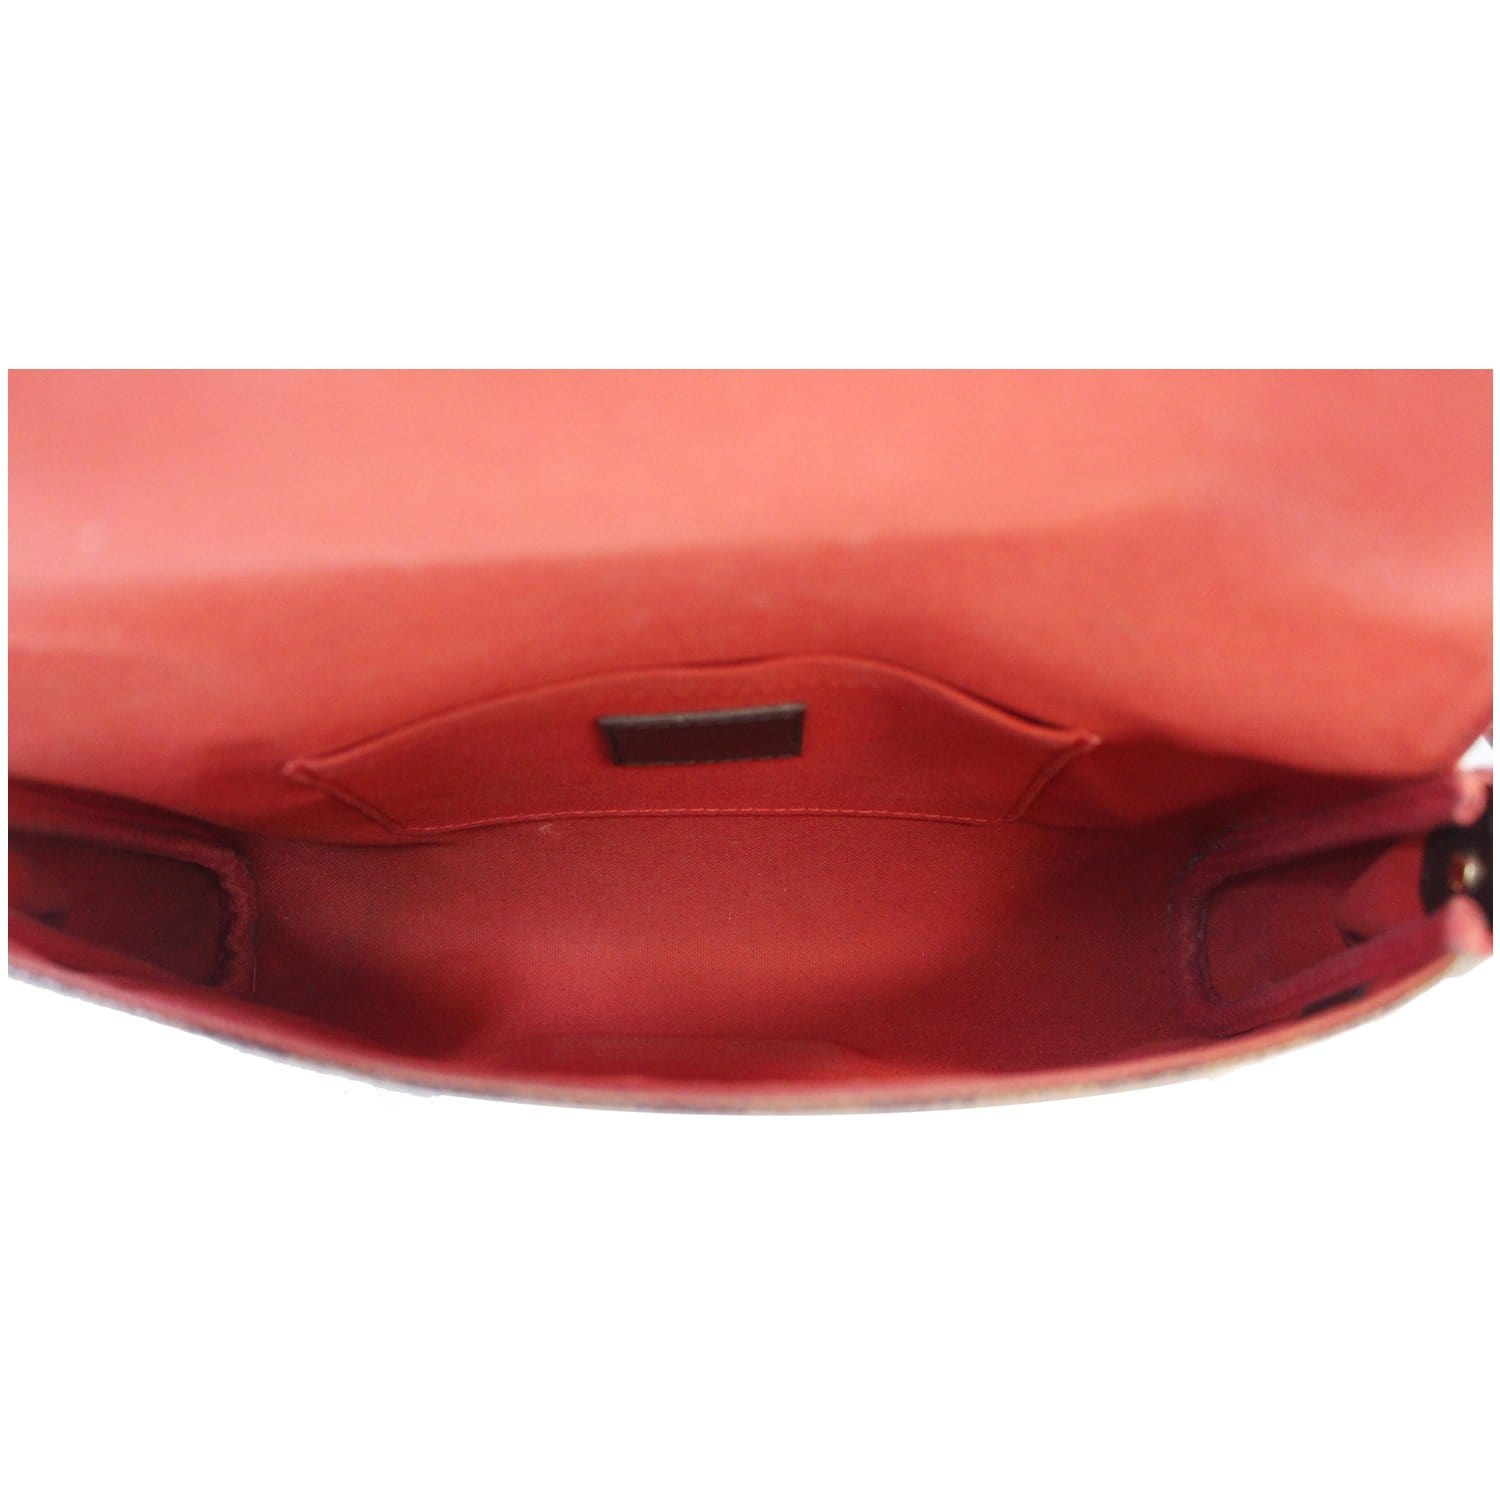 Louis Vuitton Favorite Shoulder bag 361780